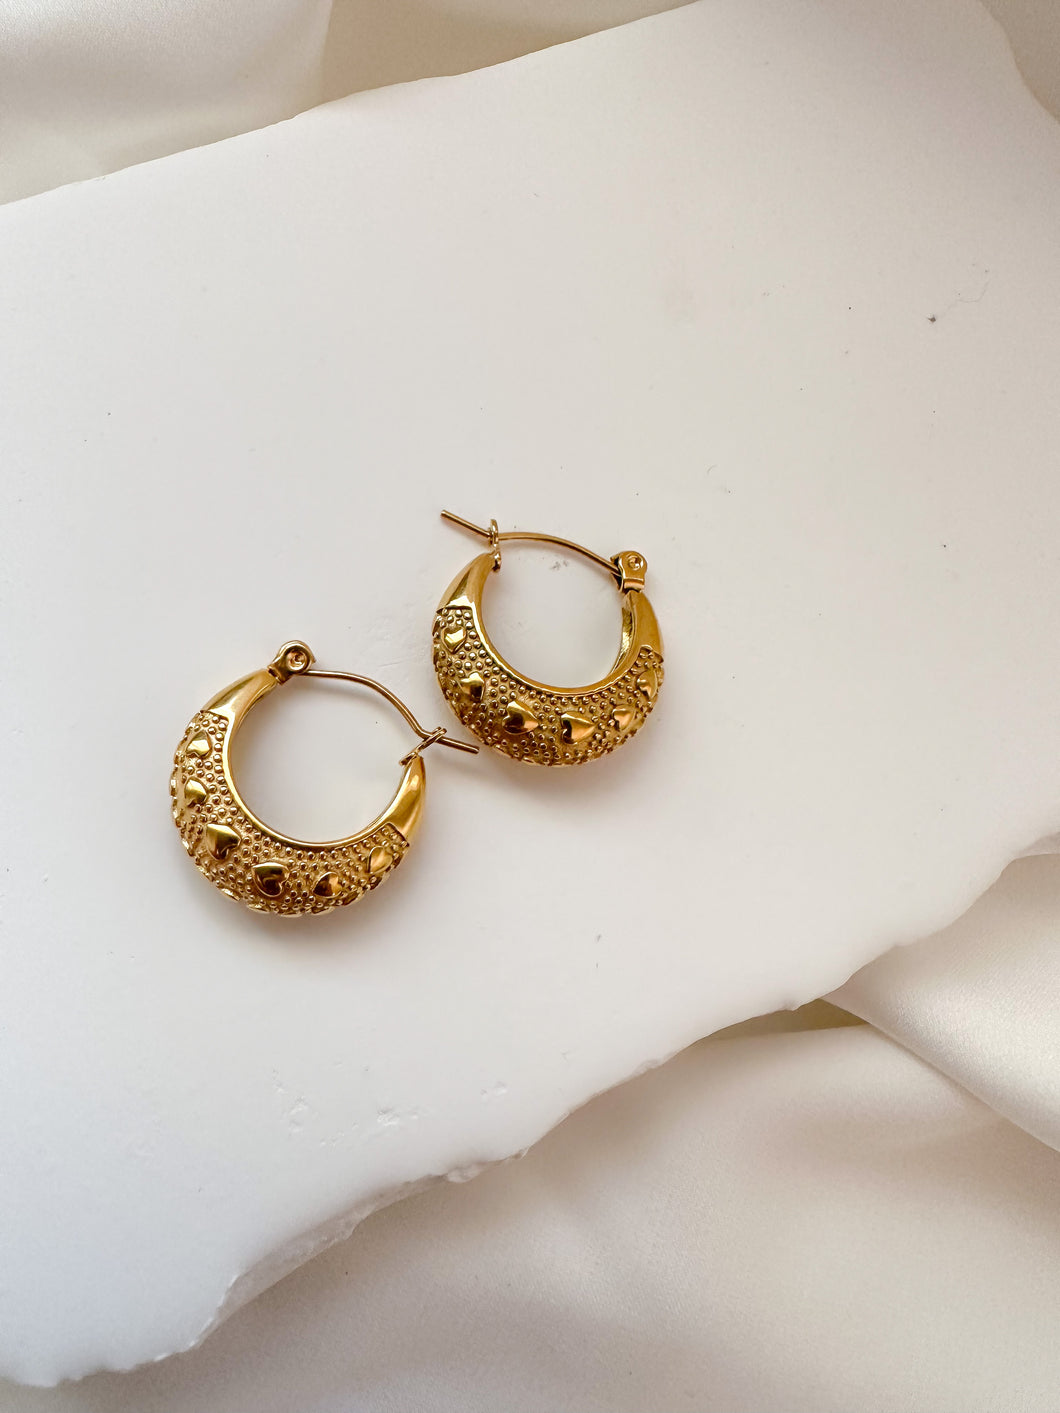 Small detailed hoop earrings